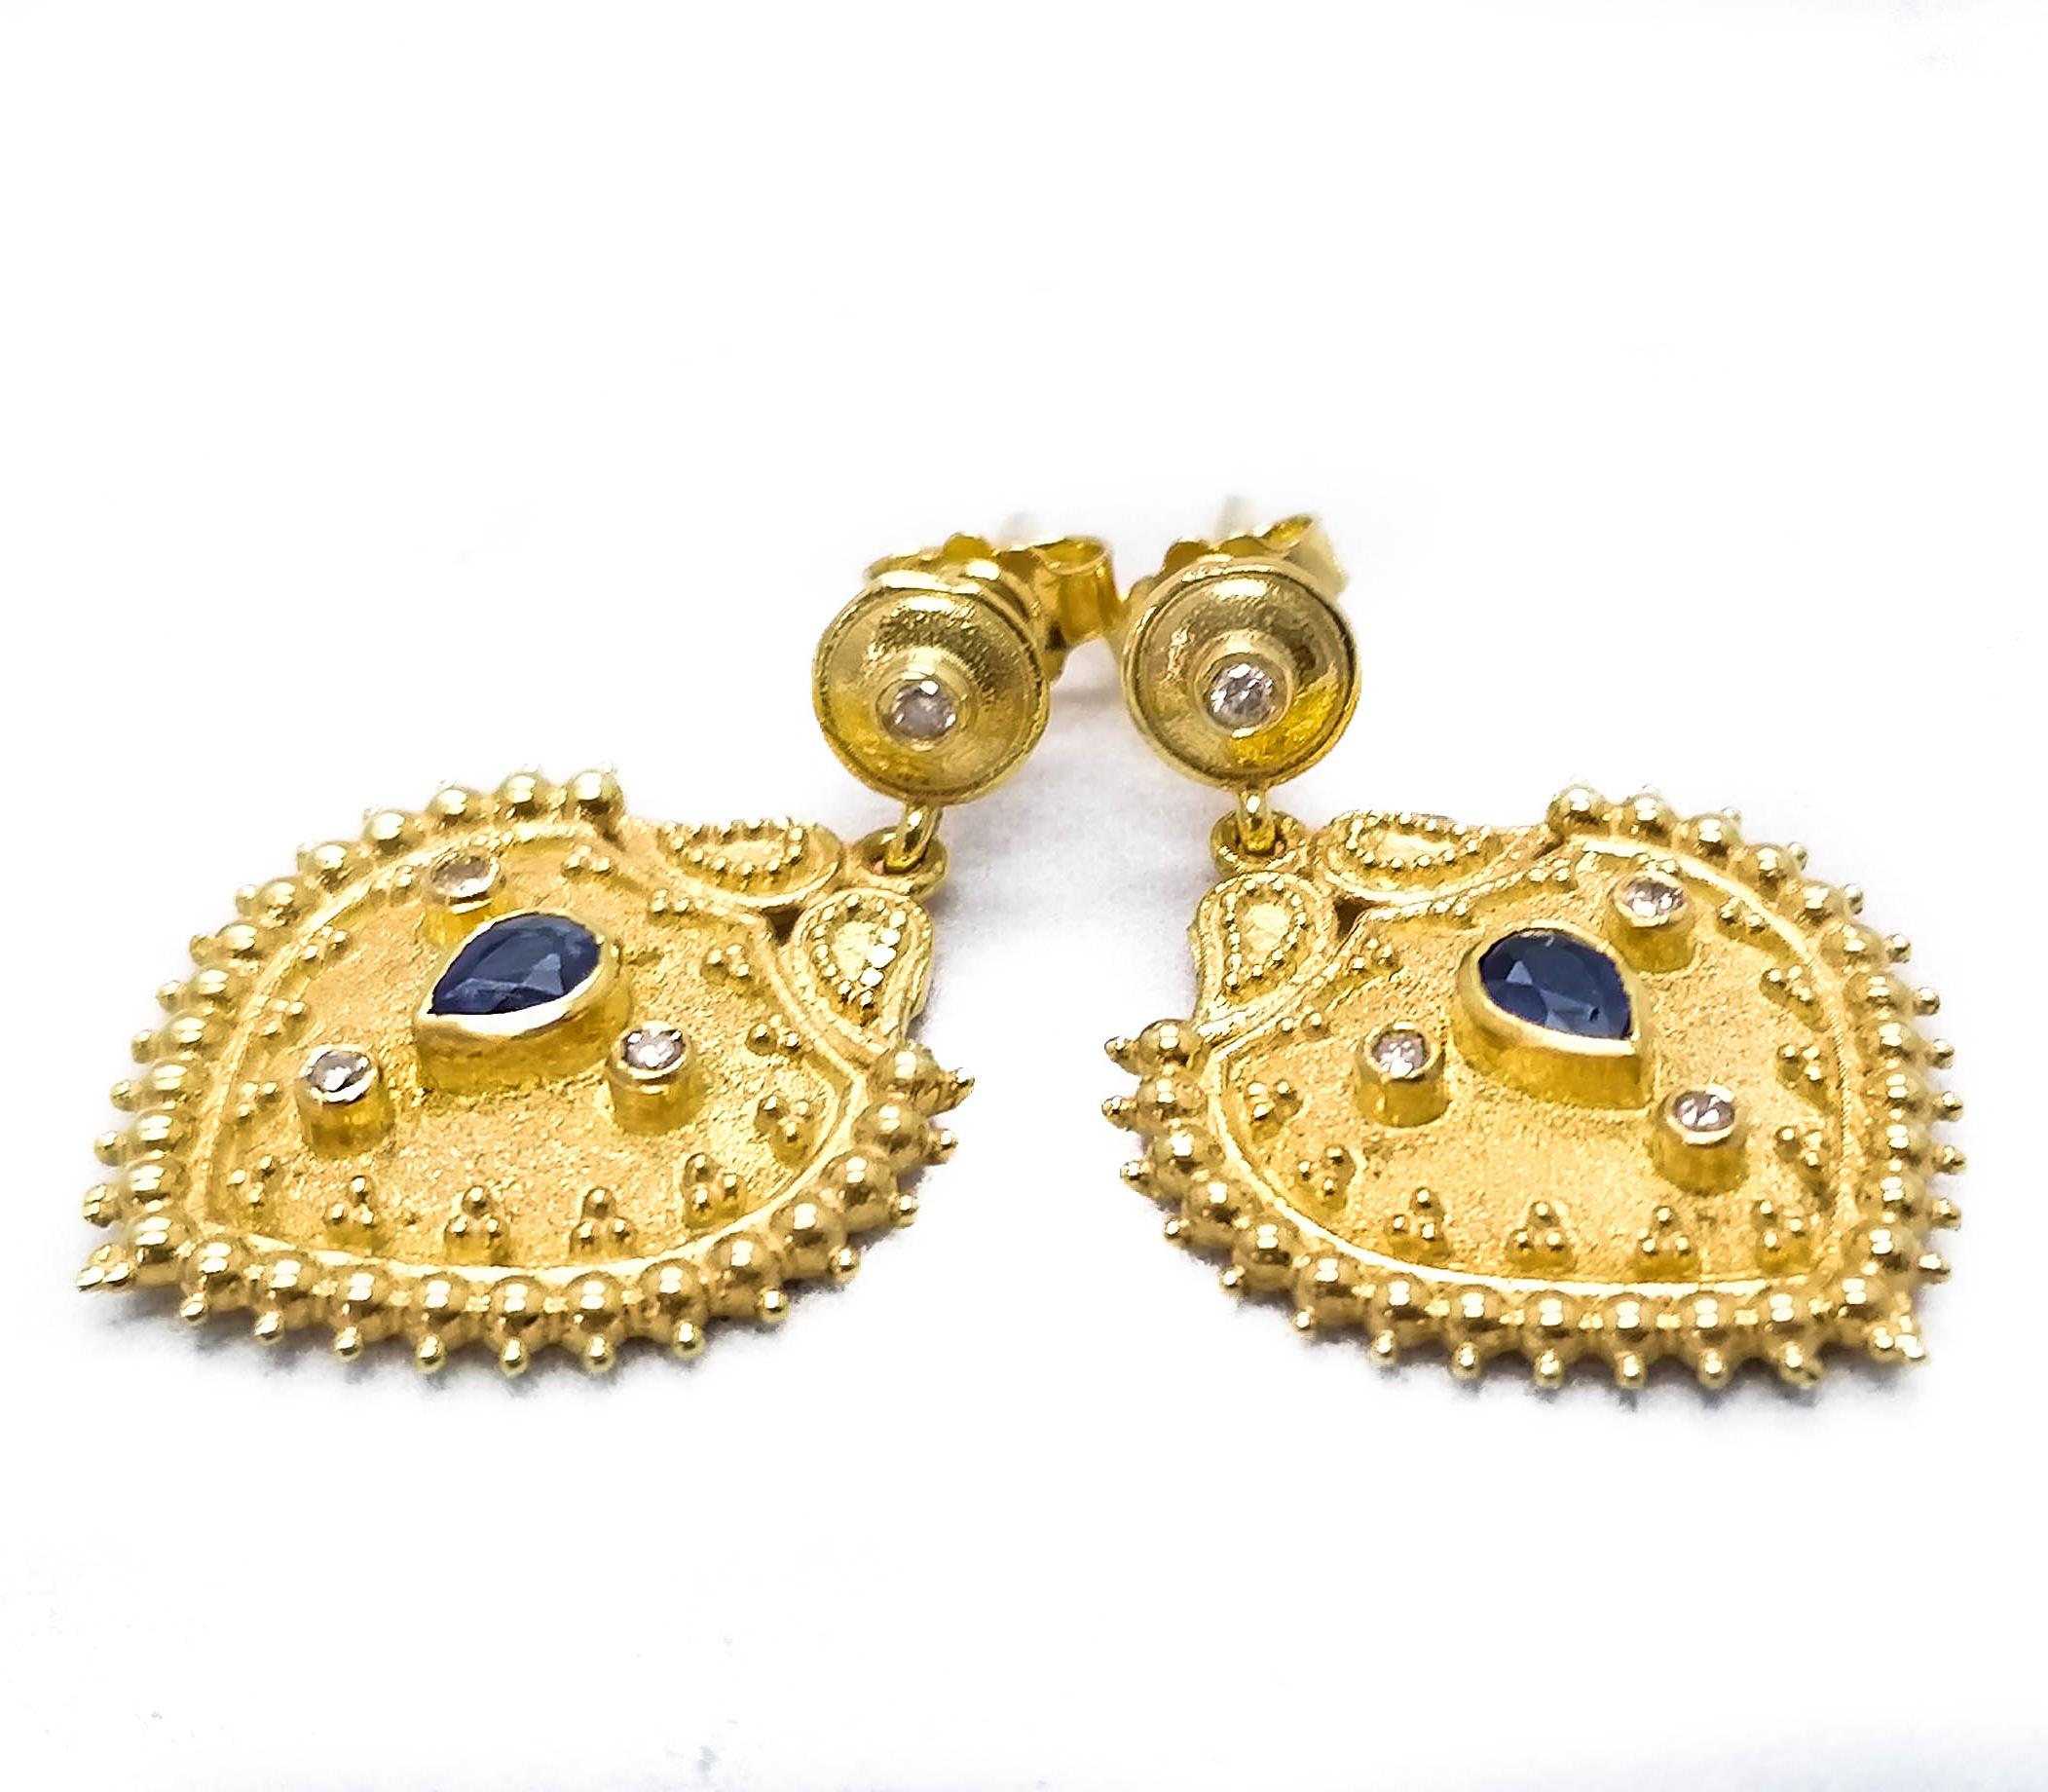 Die Designer-Ohrringe aus 18 Karat Gelbgold von S.Georgios sind mit handgefertigter Perlengranulation im byzantinischen Stil verziert und mit einem einzigartigen Samthintergrund versehen. Diese wunderschönen Ohrringe bestehen aus 2 birnenförmigen,